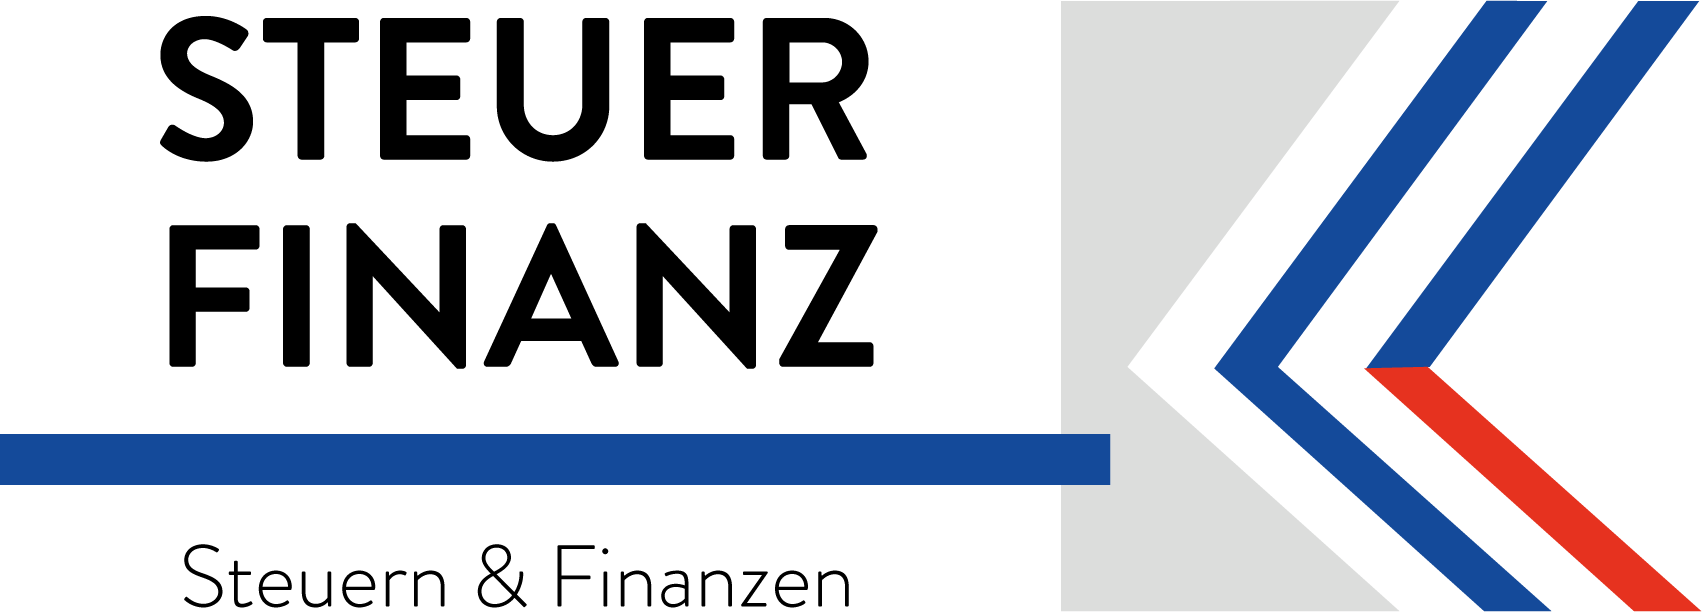 Steuerfinanz Logo